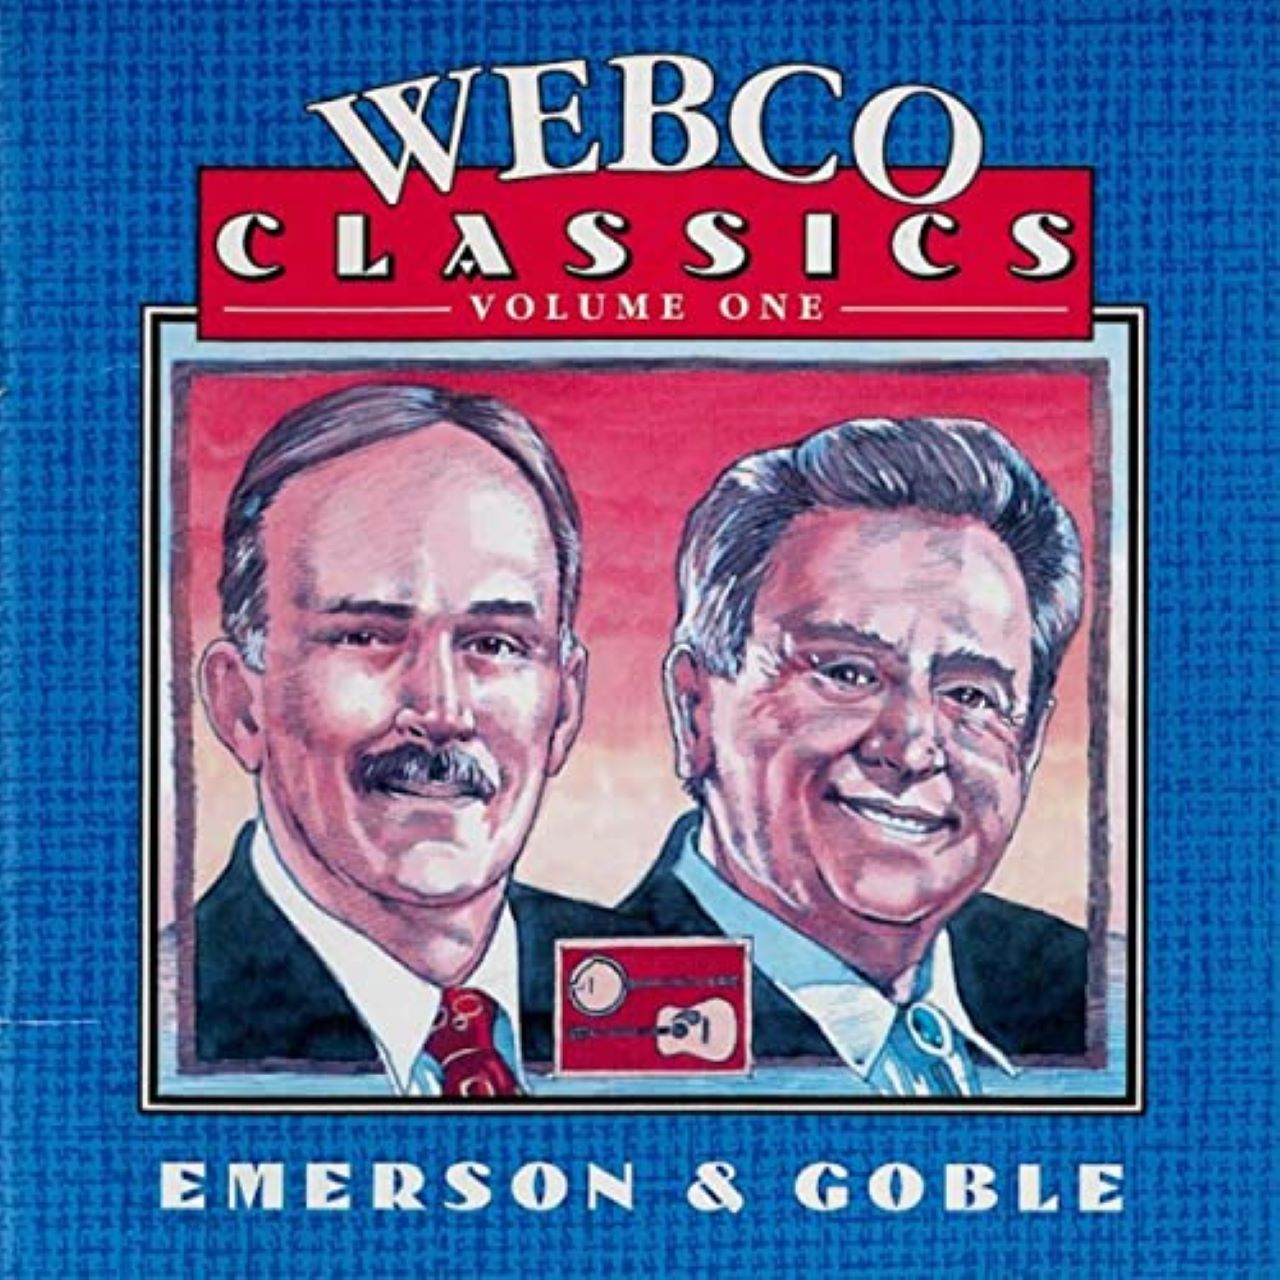 Bill Emerson & Pete Goble - Webco Classic Series, Vol. 1 cover album